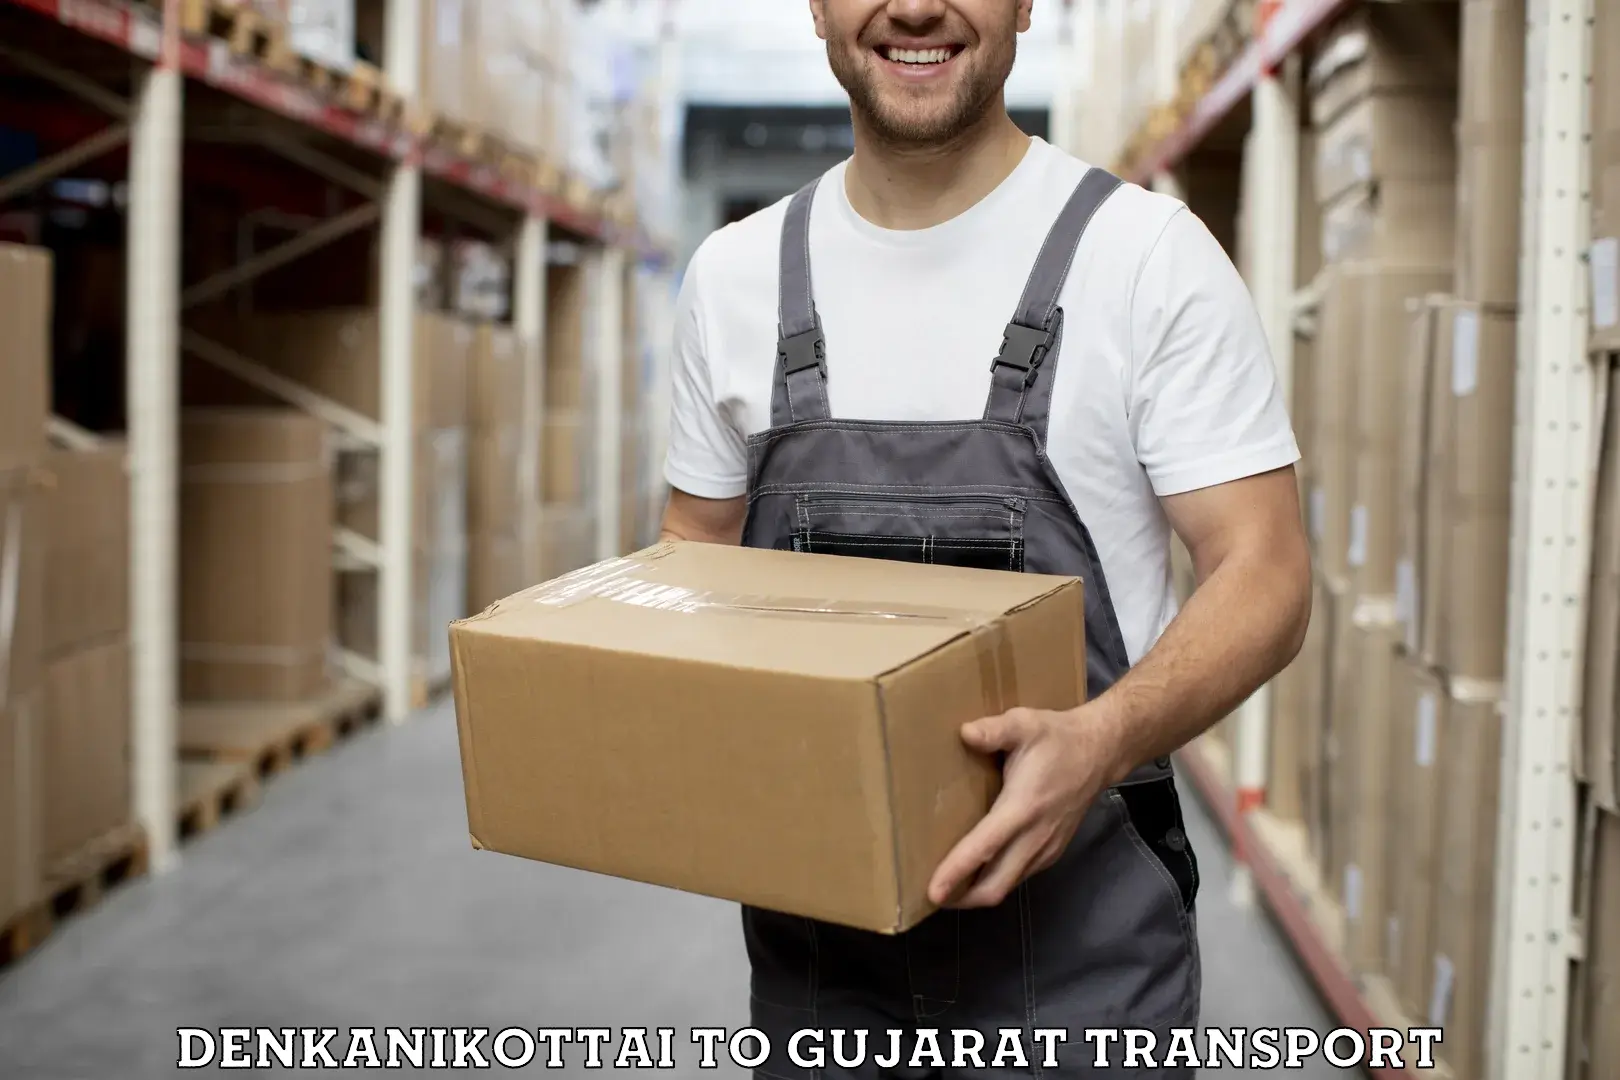 Vehicle parcel service Denkanikottai to Chhota Udaipur